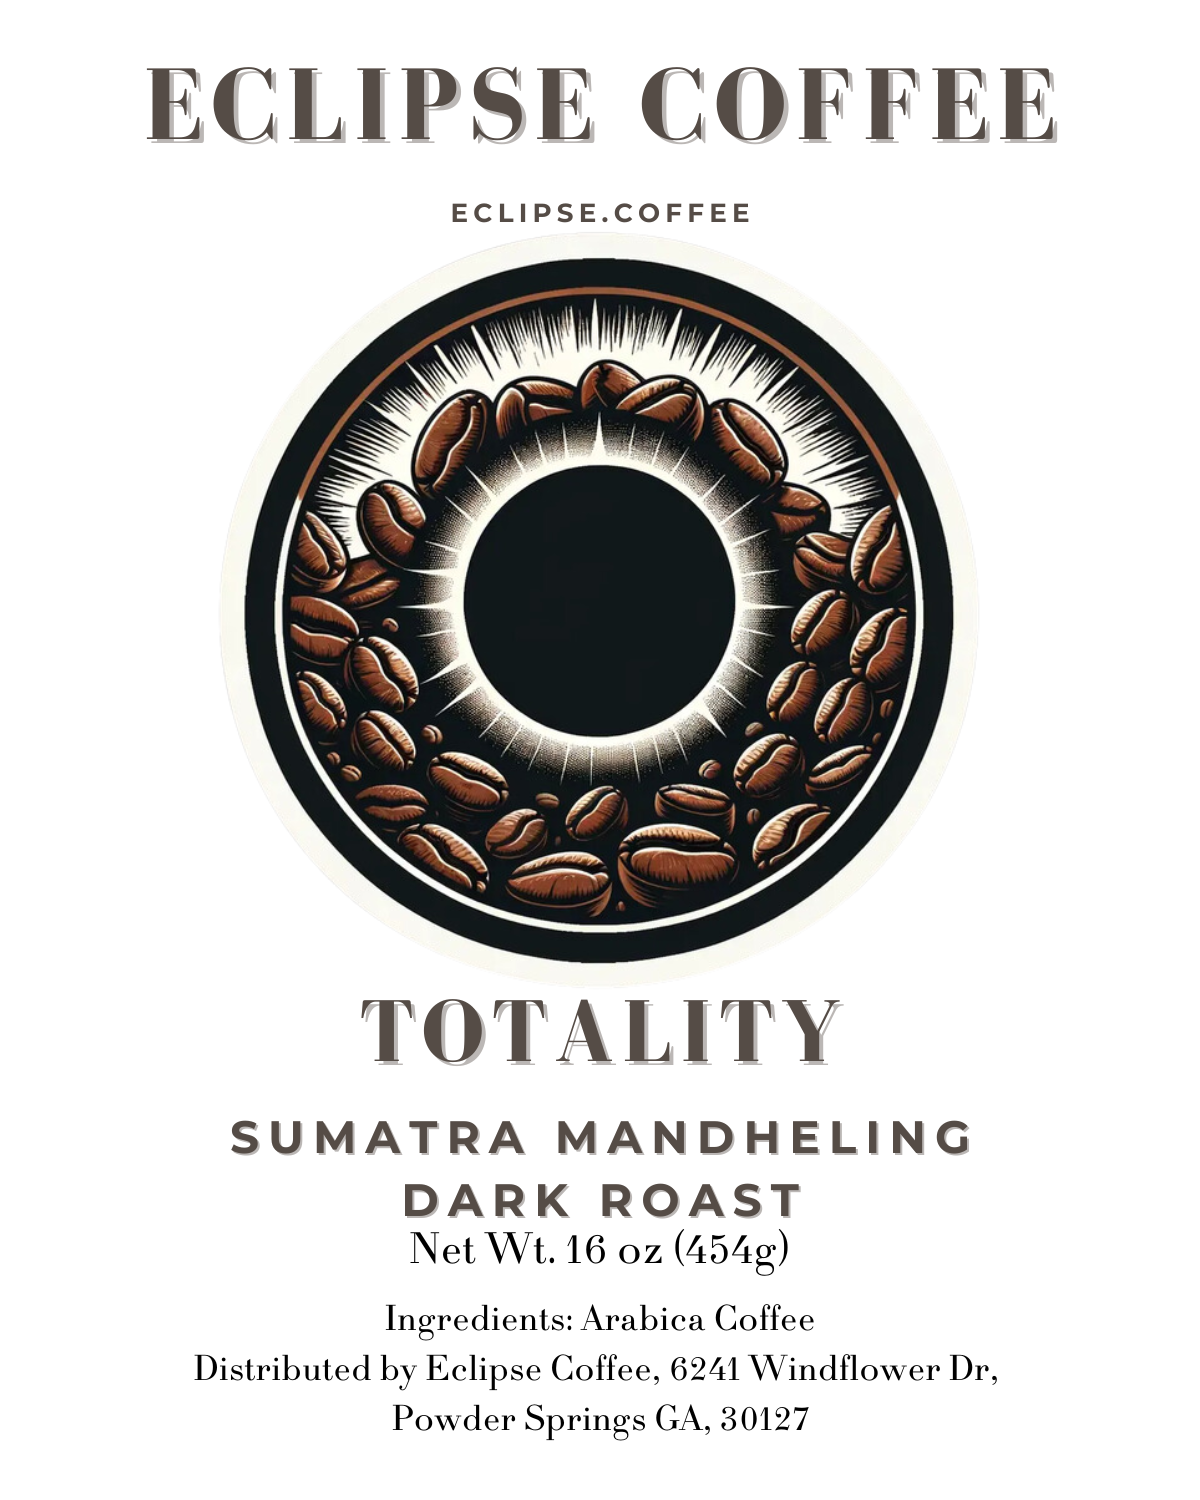 Totality: Sumatra Mandheling Dark Roast